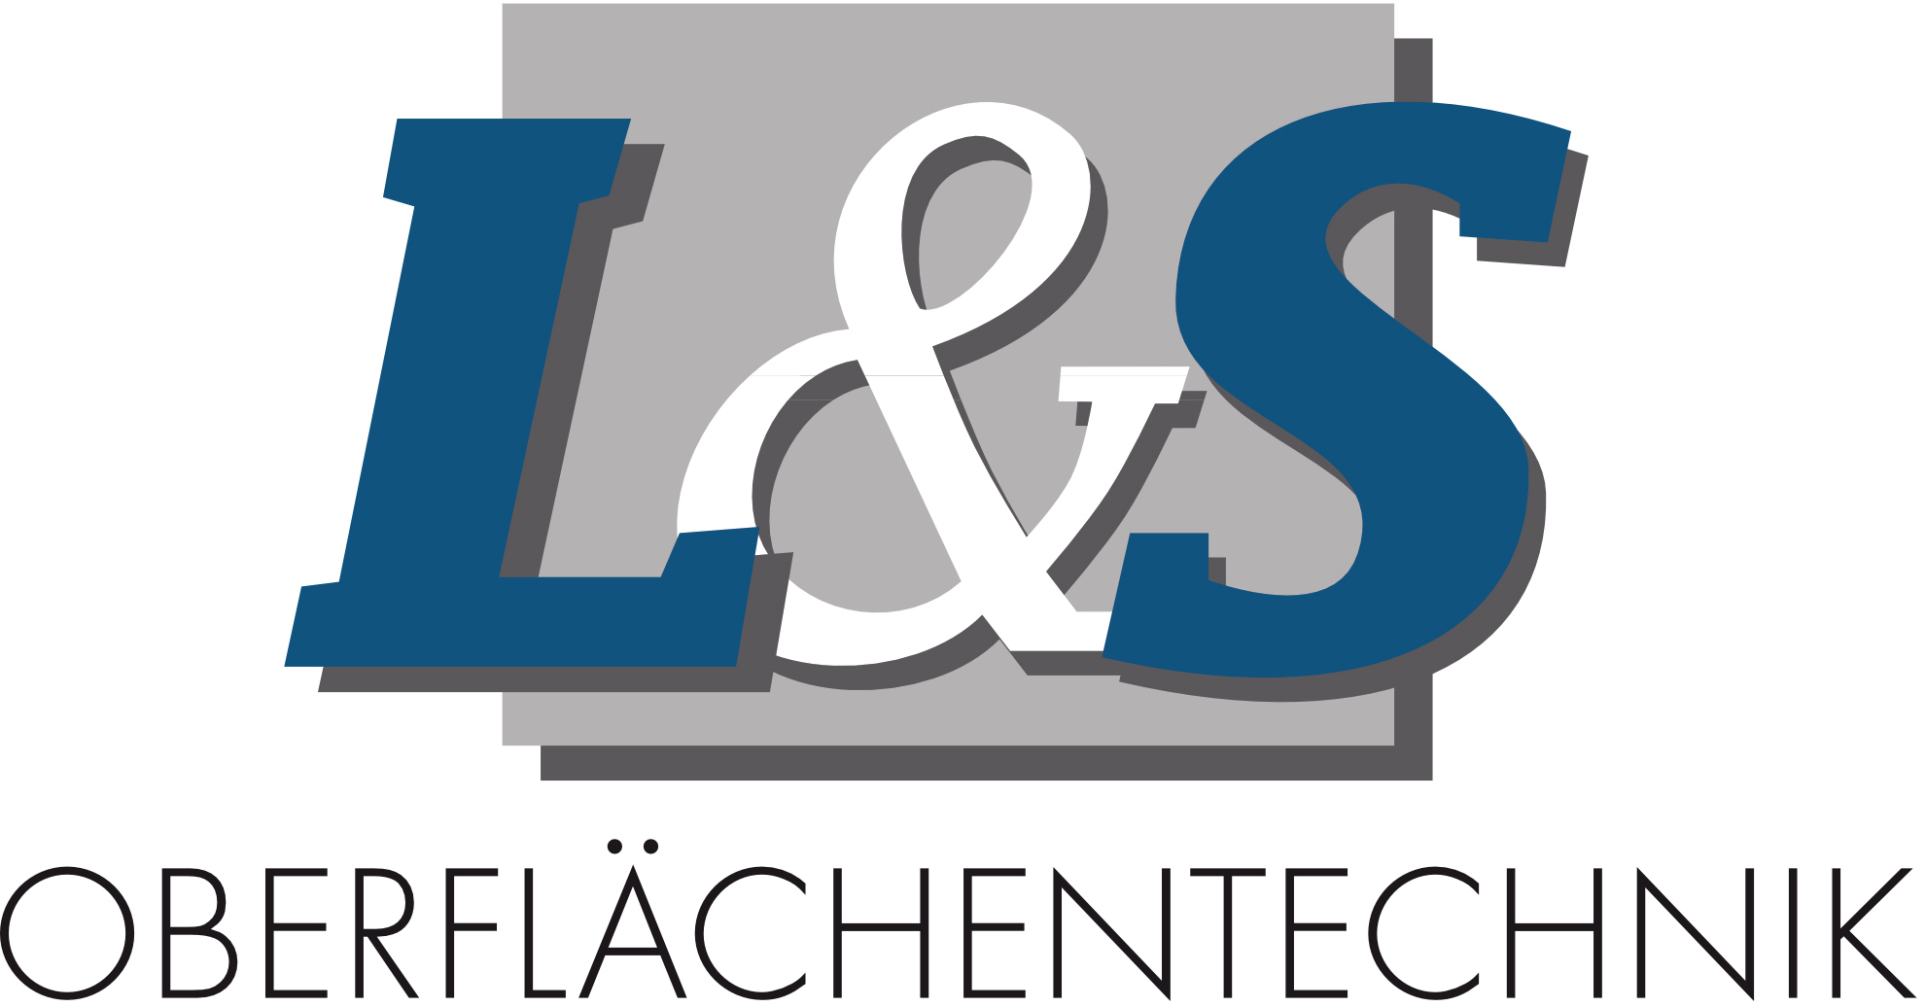 L&S
Oberflächentechnik GmbH & Co. KG